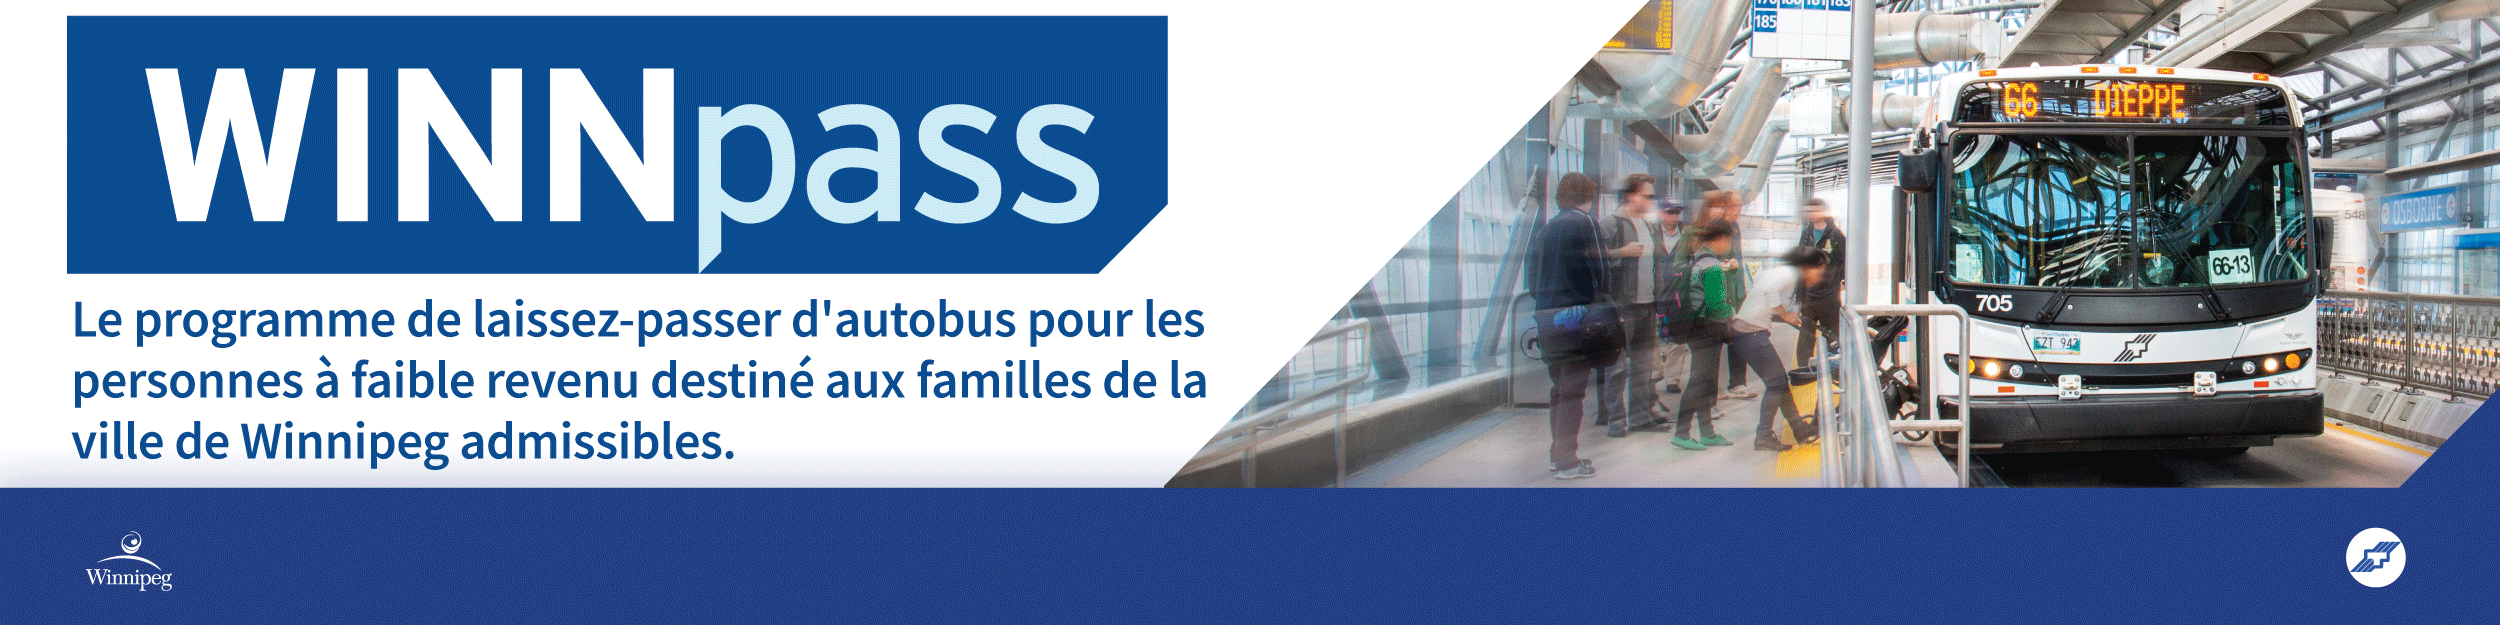 WINNpass Le nouveau programme de laissez-passer d'autobus pour les personnes a faible revenu destiné aux familles de la Ville de Winnipeg admissibles